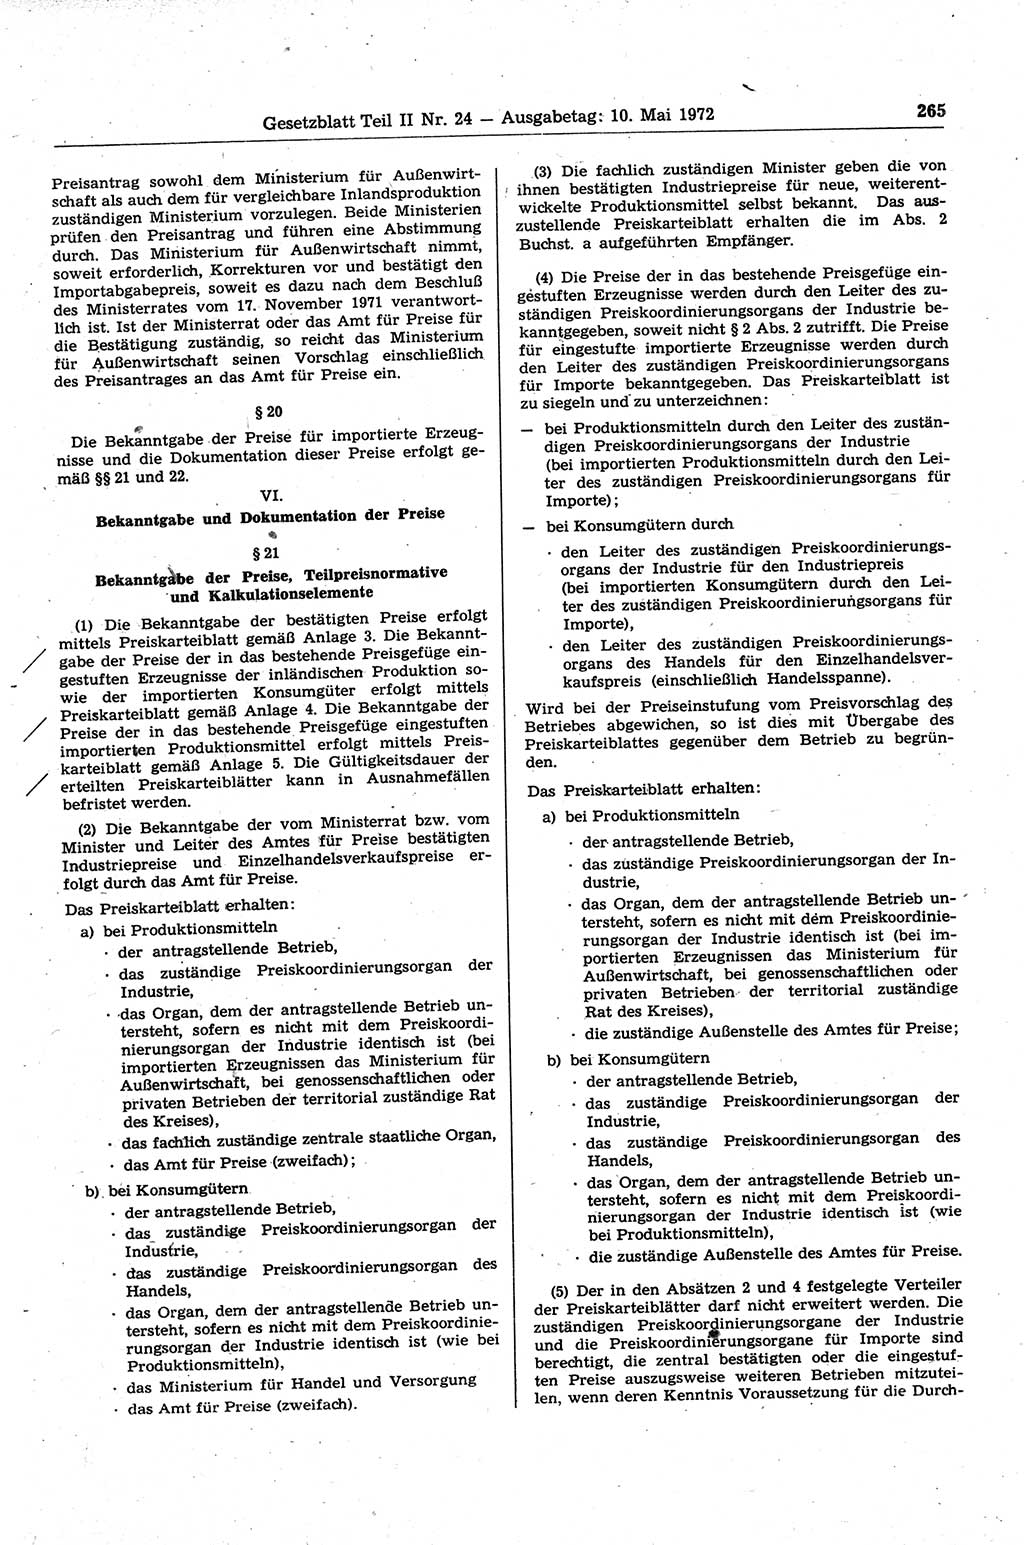 Gesetzblatt (GBl.) der Deutschen Demokratischen Republik (DDR) Teil ⅠⅠ 1972, Seite 265 (GBl. DDR ⅠⅠ 1972, S. 265)